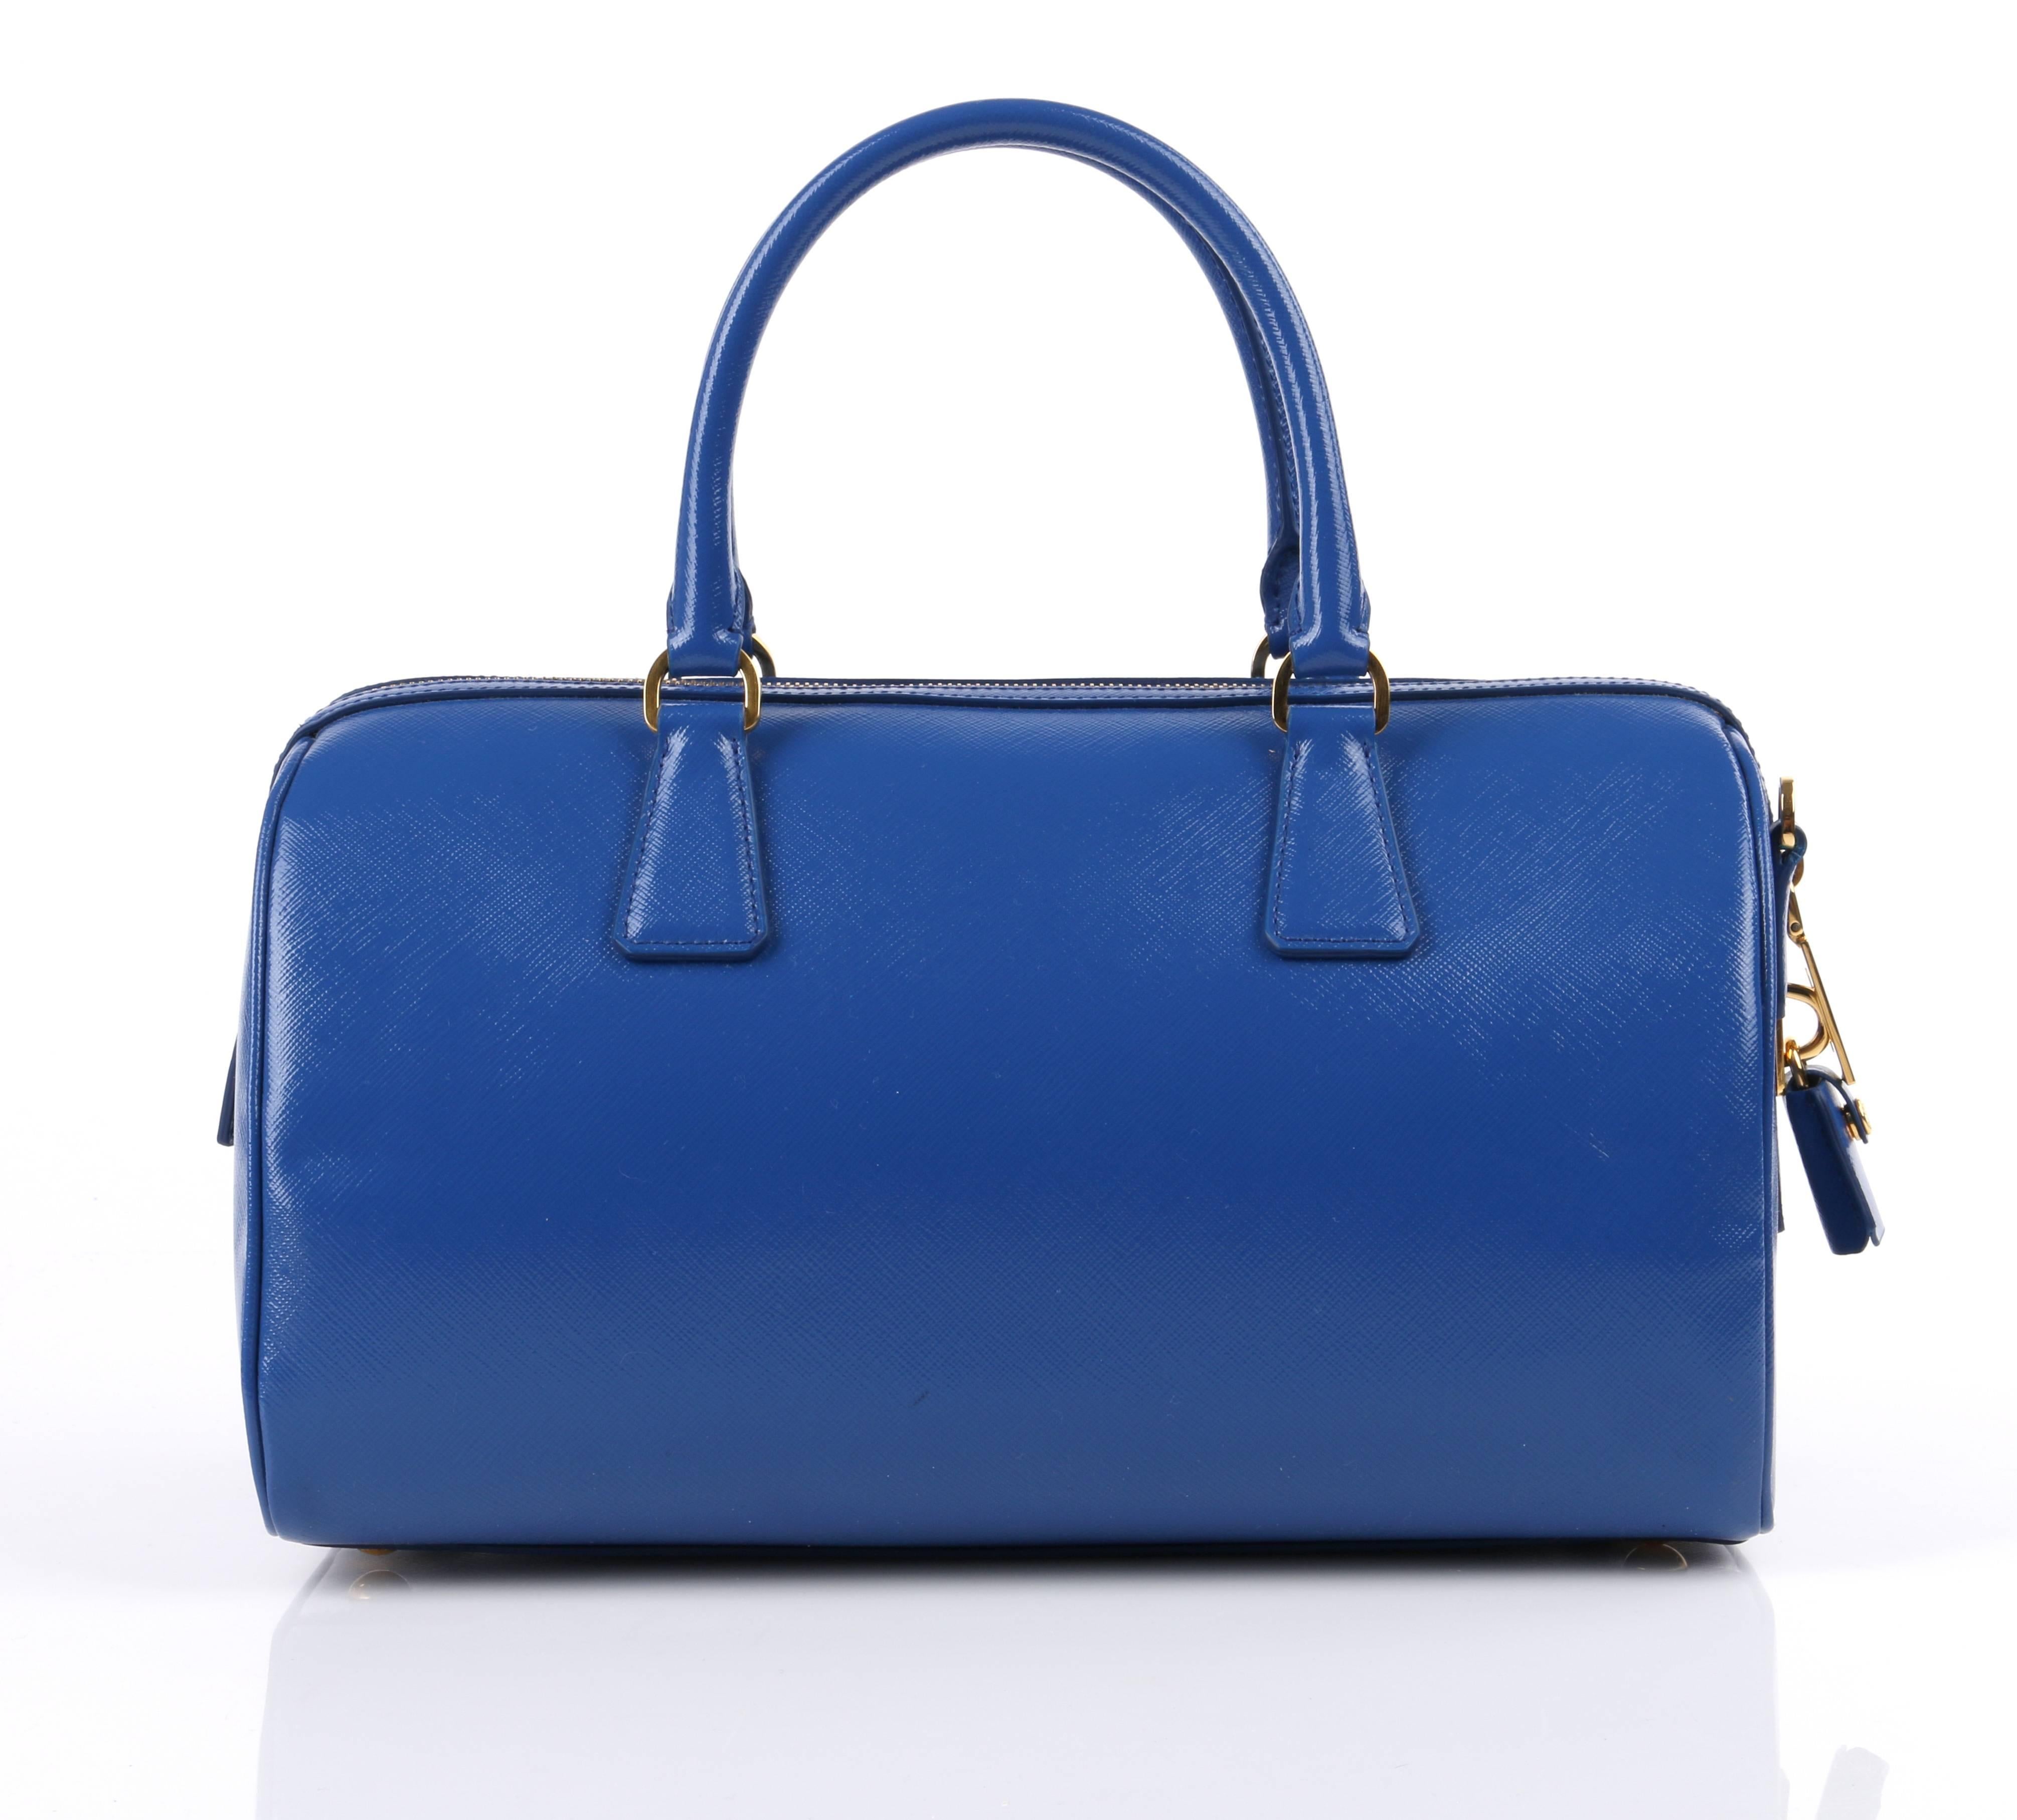 PRADA S/S 2012 Blue Saffiano Vernice Patent Leather Convertible Boston ...